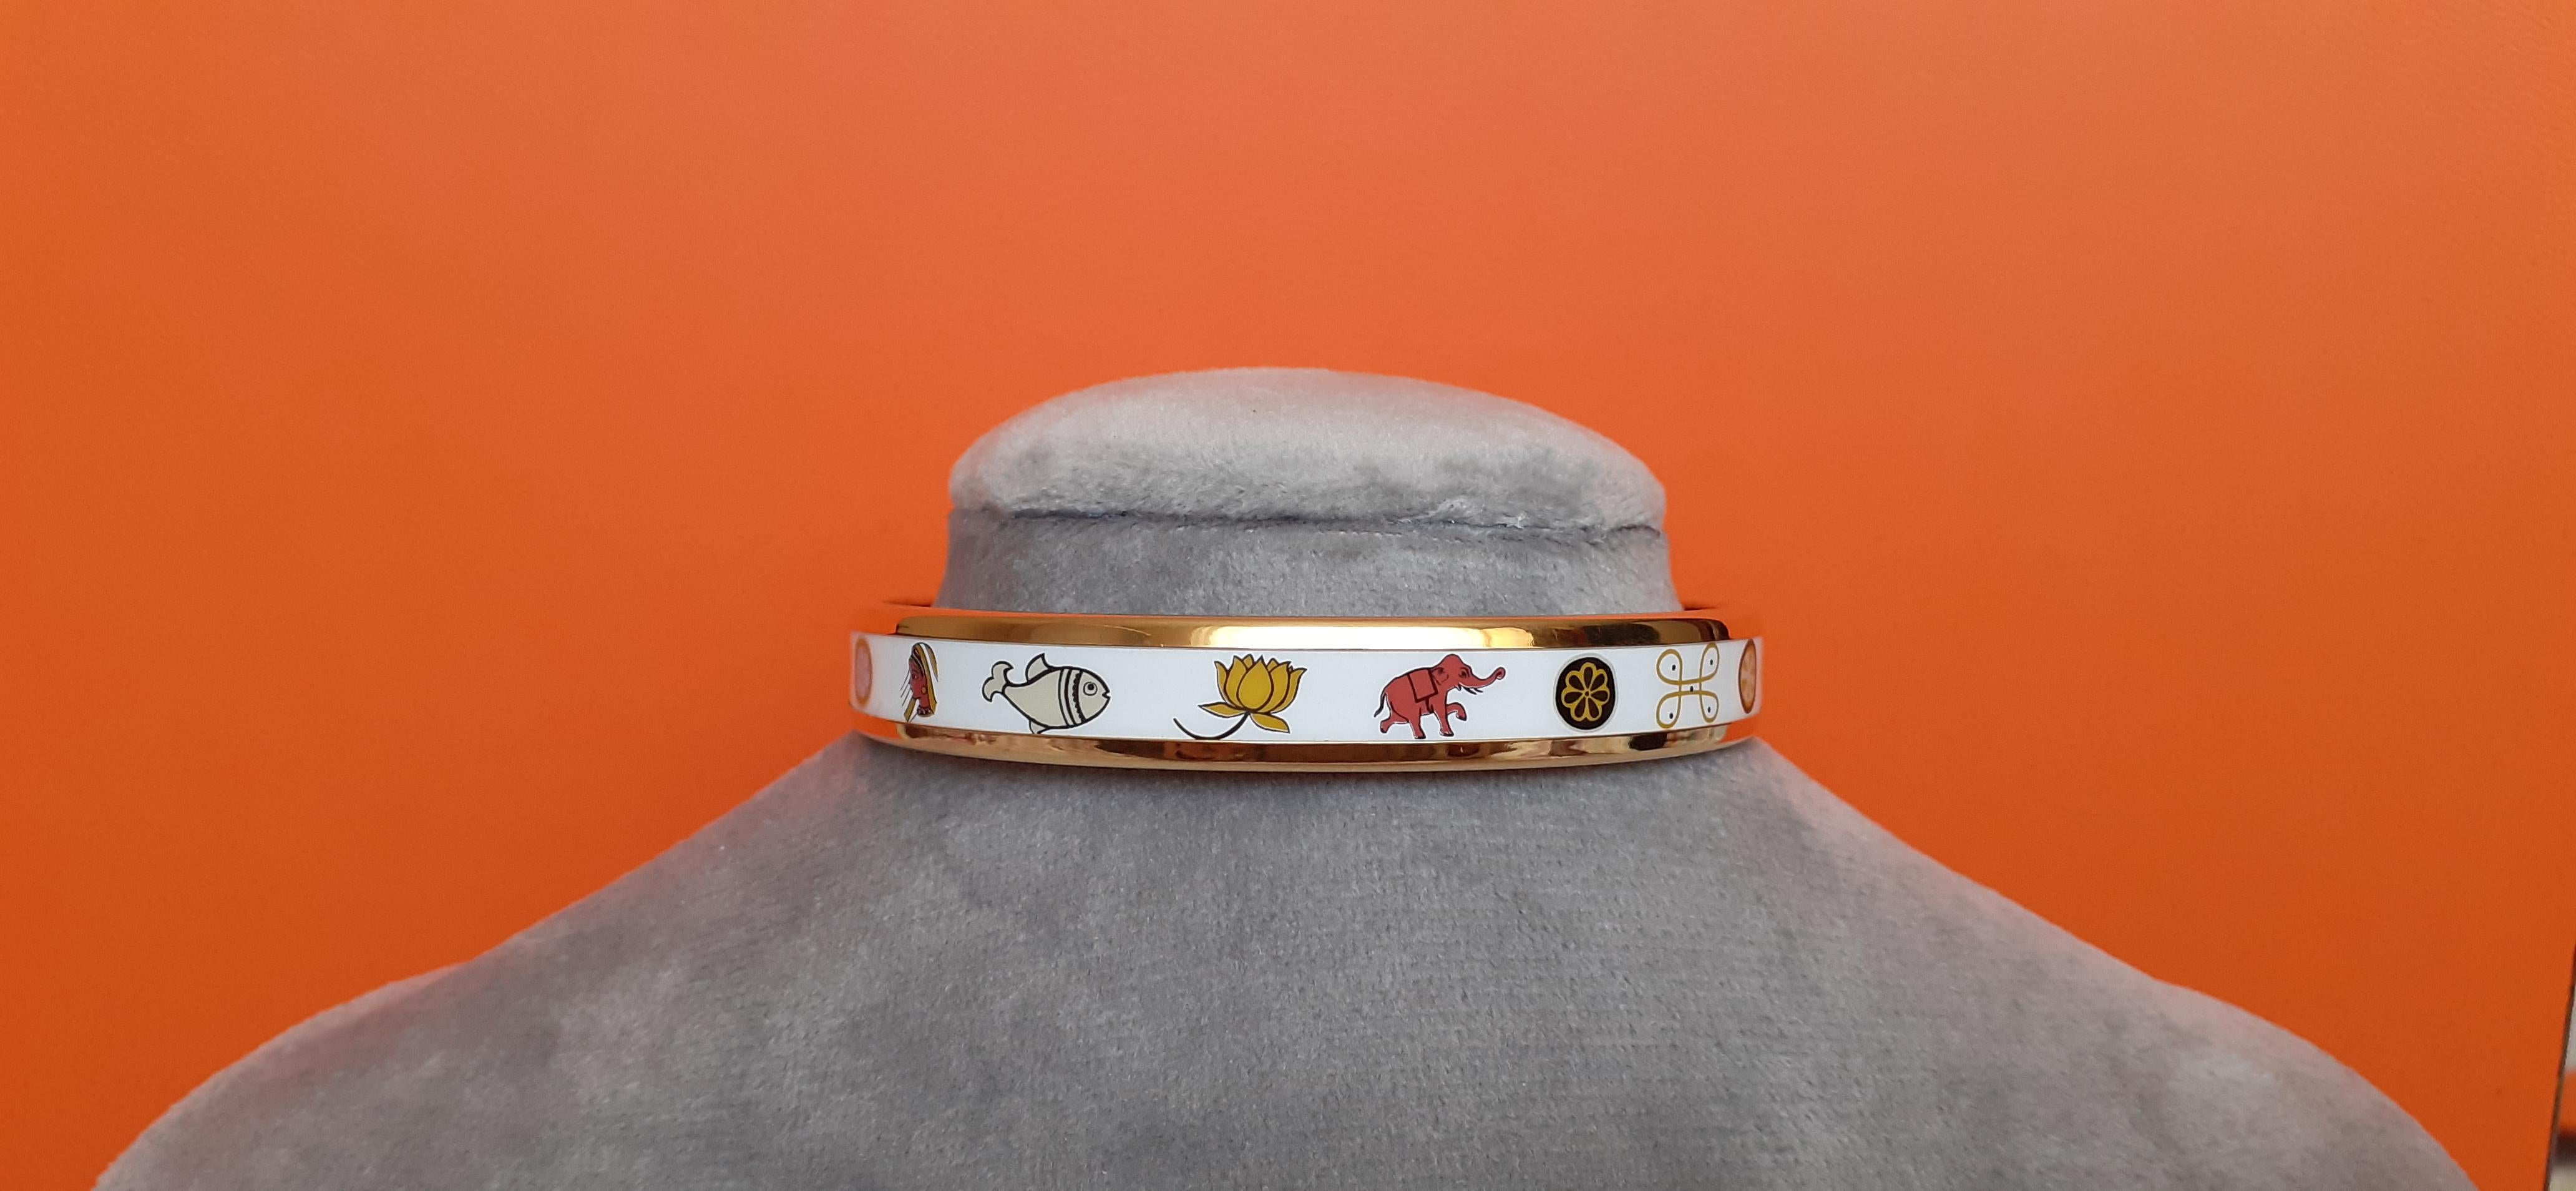 Super mignon et adorable bracelet Hermès authentique

Dessins sur le thème de l'Inde

Très rare

